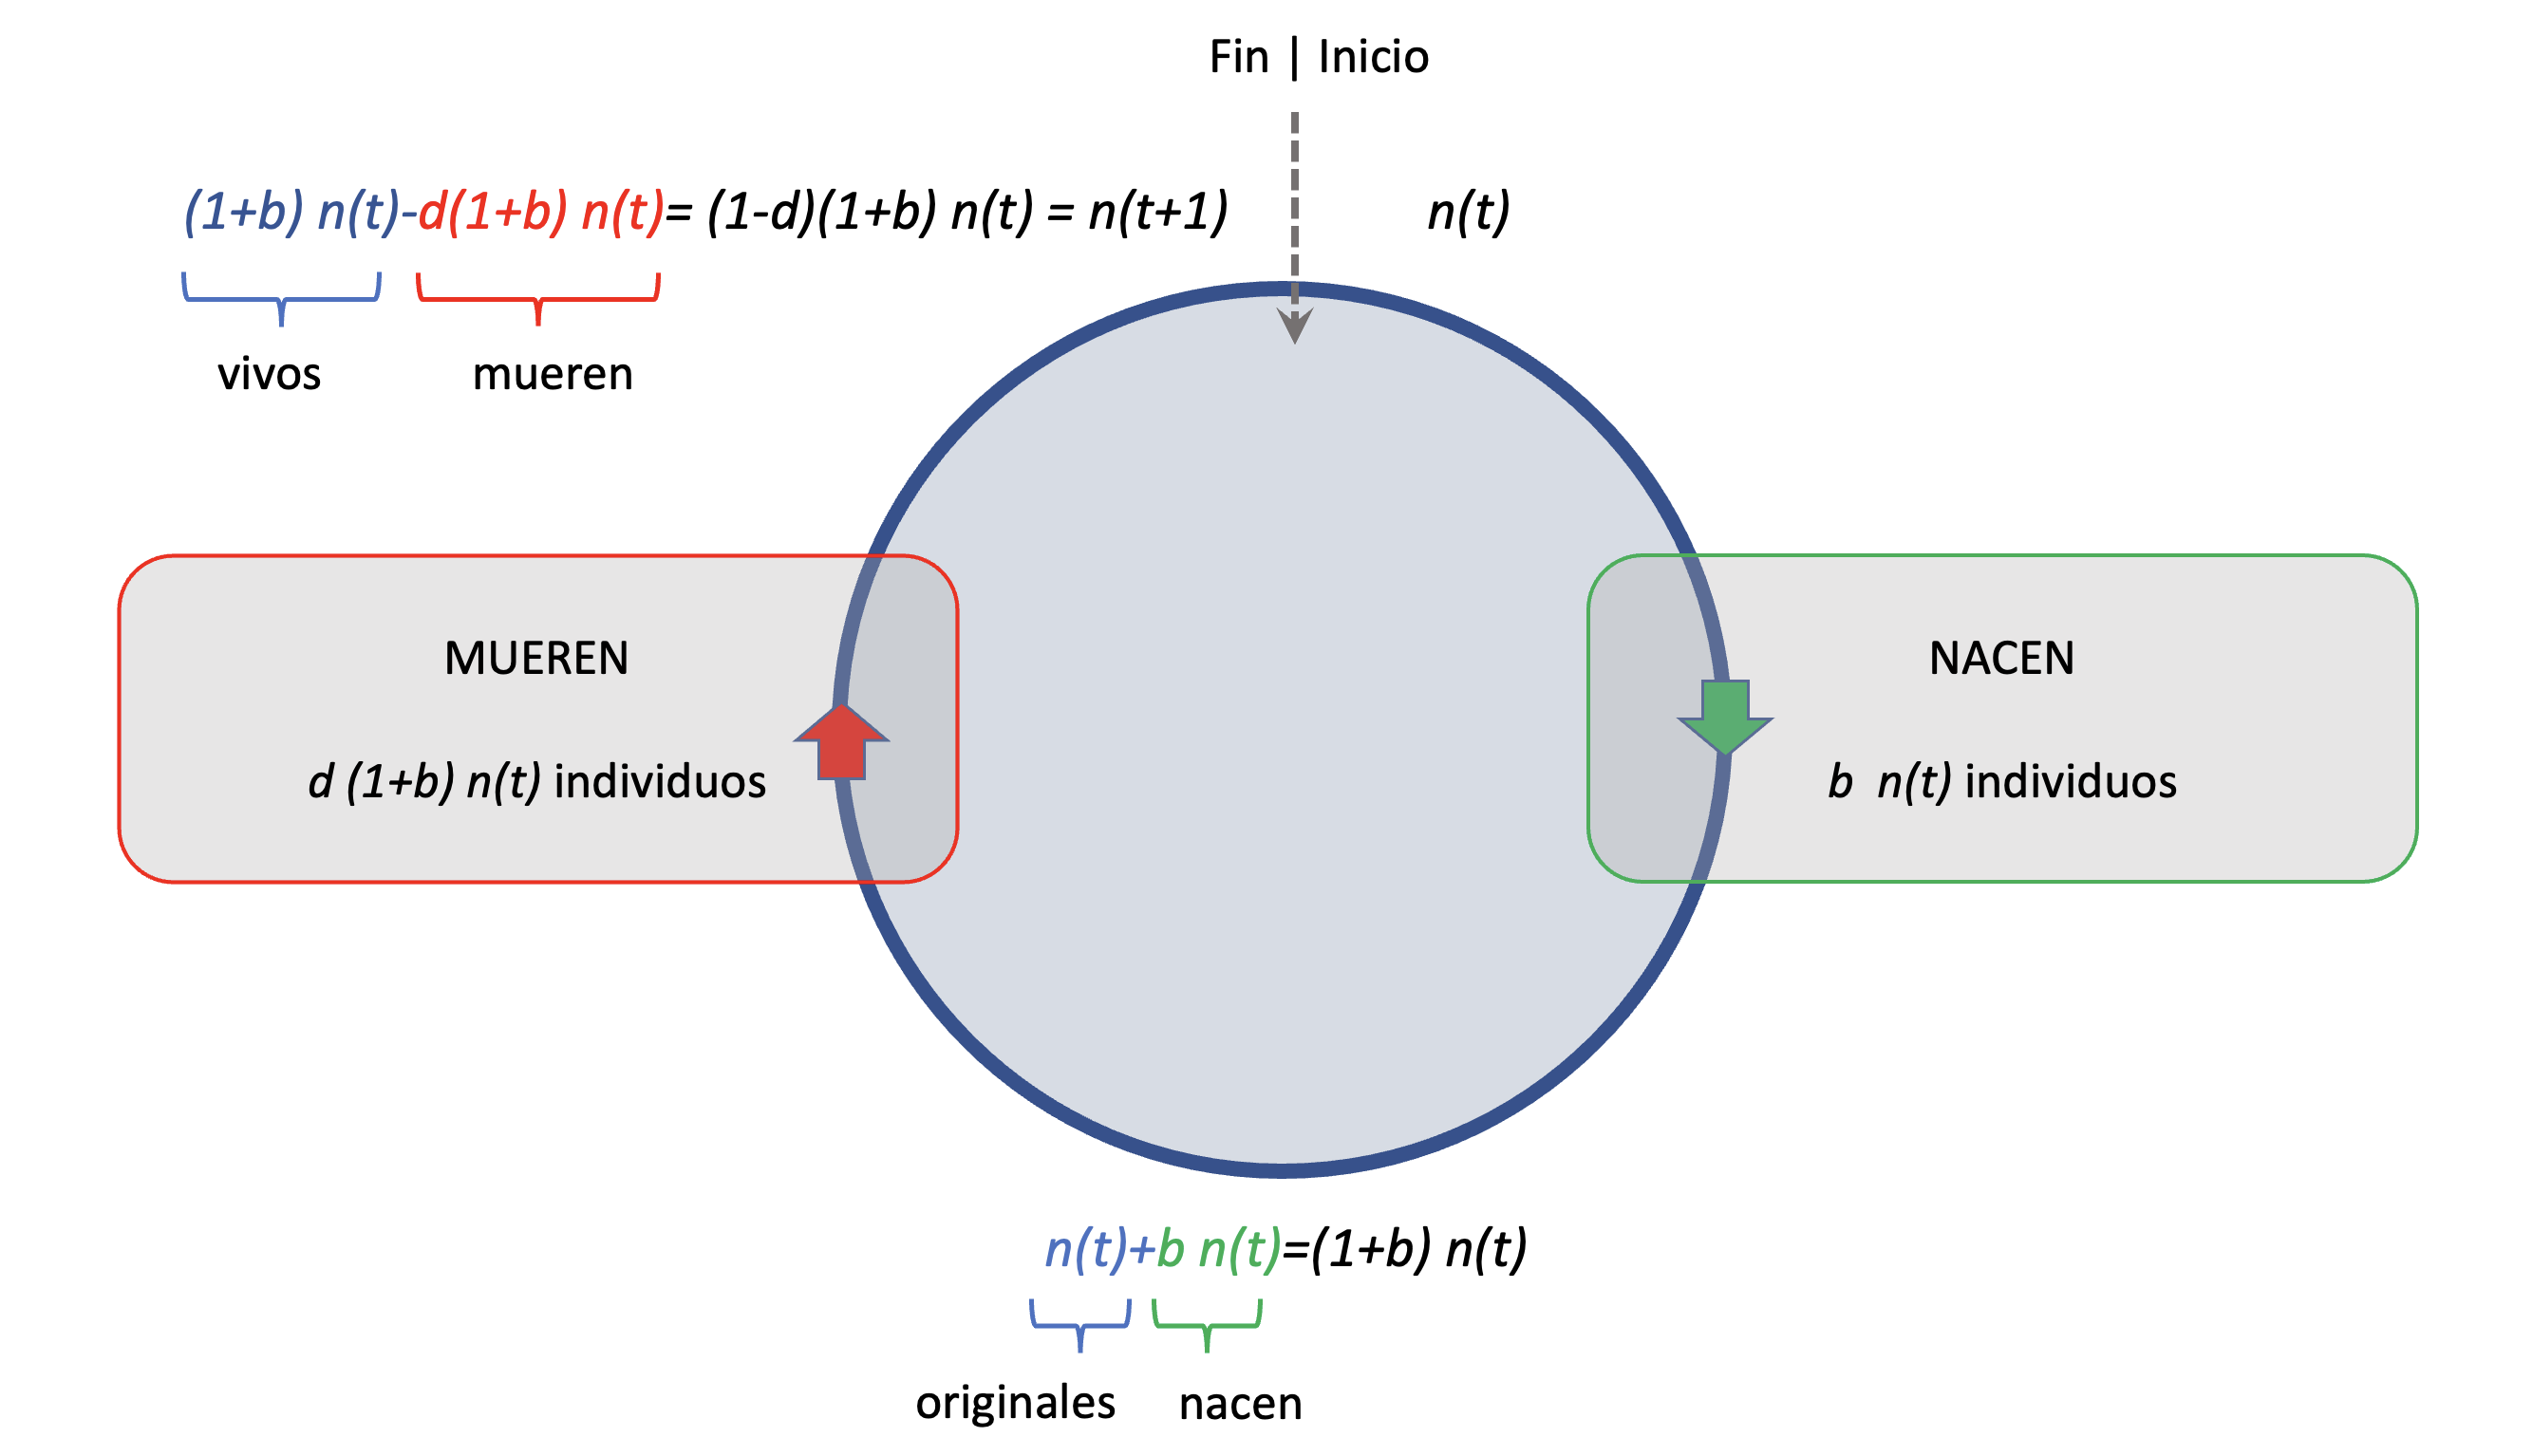 Modelo discreto del ciclo de vida simple de una bacteria. El ciclo gira en sentido horario, comenzando en la parte superior con \(n(t)\) individuos. Luego de un evento (flecha verde) en que cada individuo deja un número \(b\) de individuos adicionales, el número de individuos que llega a la parte inferior del círculo es \(n(t)+b\cdot n(t)=(1+b)\cdot n(t)\). El siguiente evento (flecha roja) es la muerte, donde una proporción \(d\) de los individuos se muere, resultando en \(b\cdot (1-d)\cdot n(t)\) individuos muertos, que si los restamos de los vivos me permite llegar al final del ciclo con \(n(t+1)=(1+b)\cdot n(t)-d\ (1+b)\cdot n(t)=(1-d) \cdot (1+b) \cdot n(t)\) individuos.